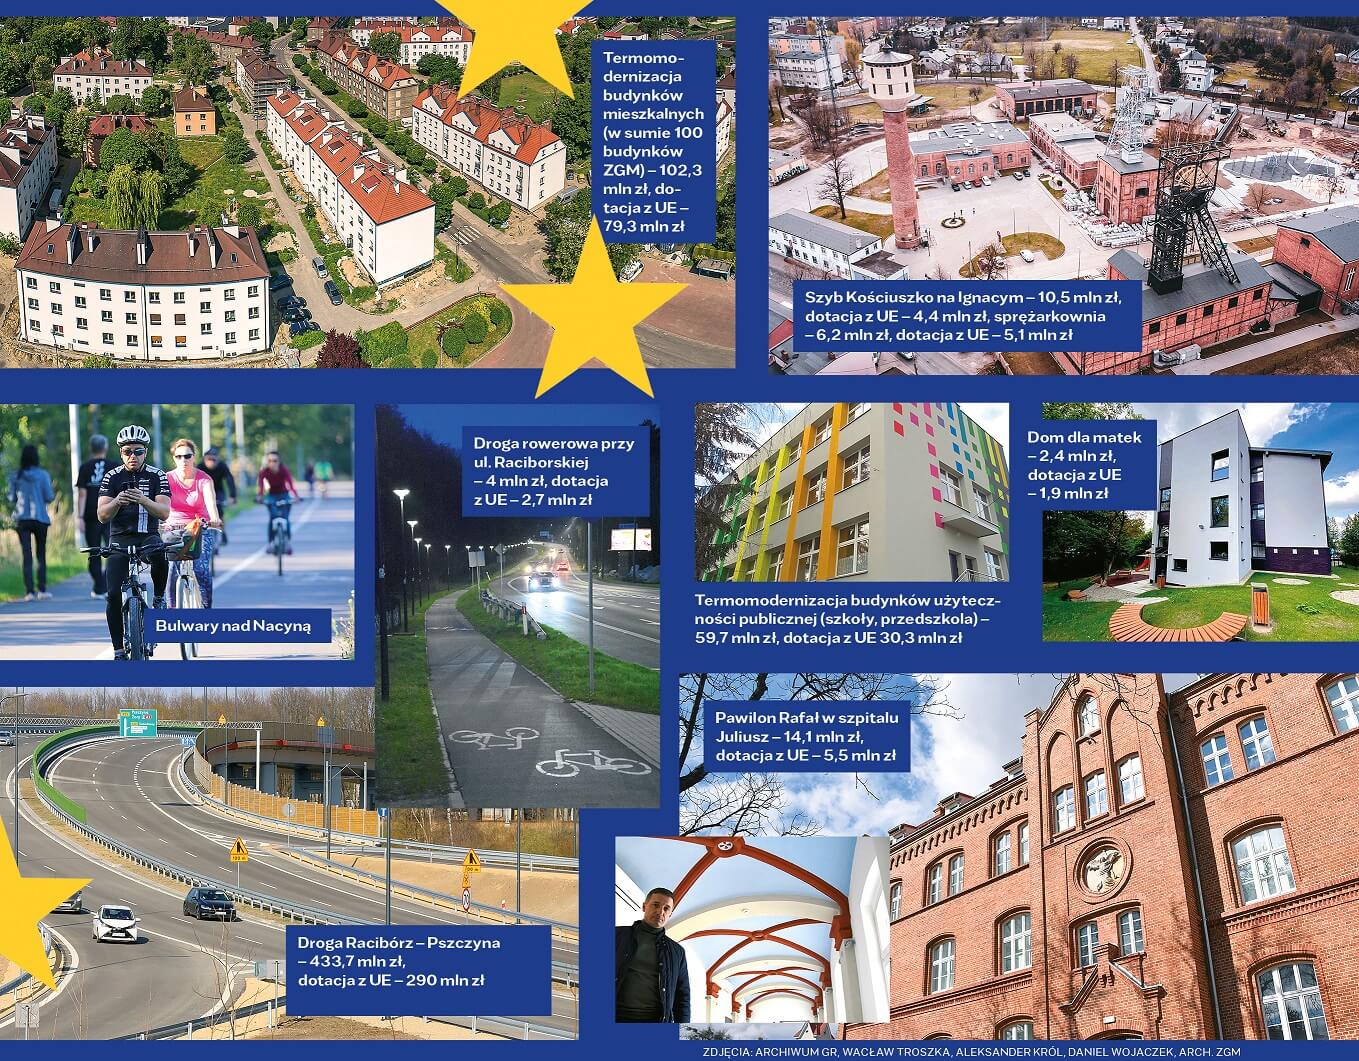 Inwestycje zrealizowane w Rybniku dzięki funduszom z Unii Europejskiej